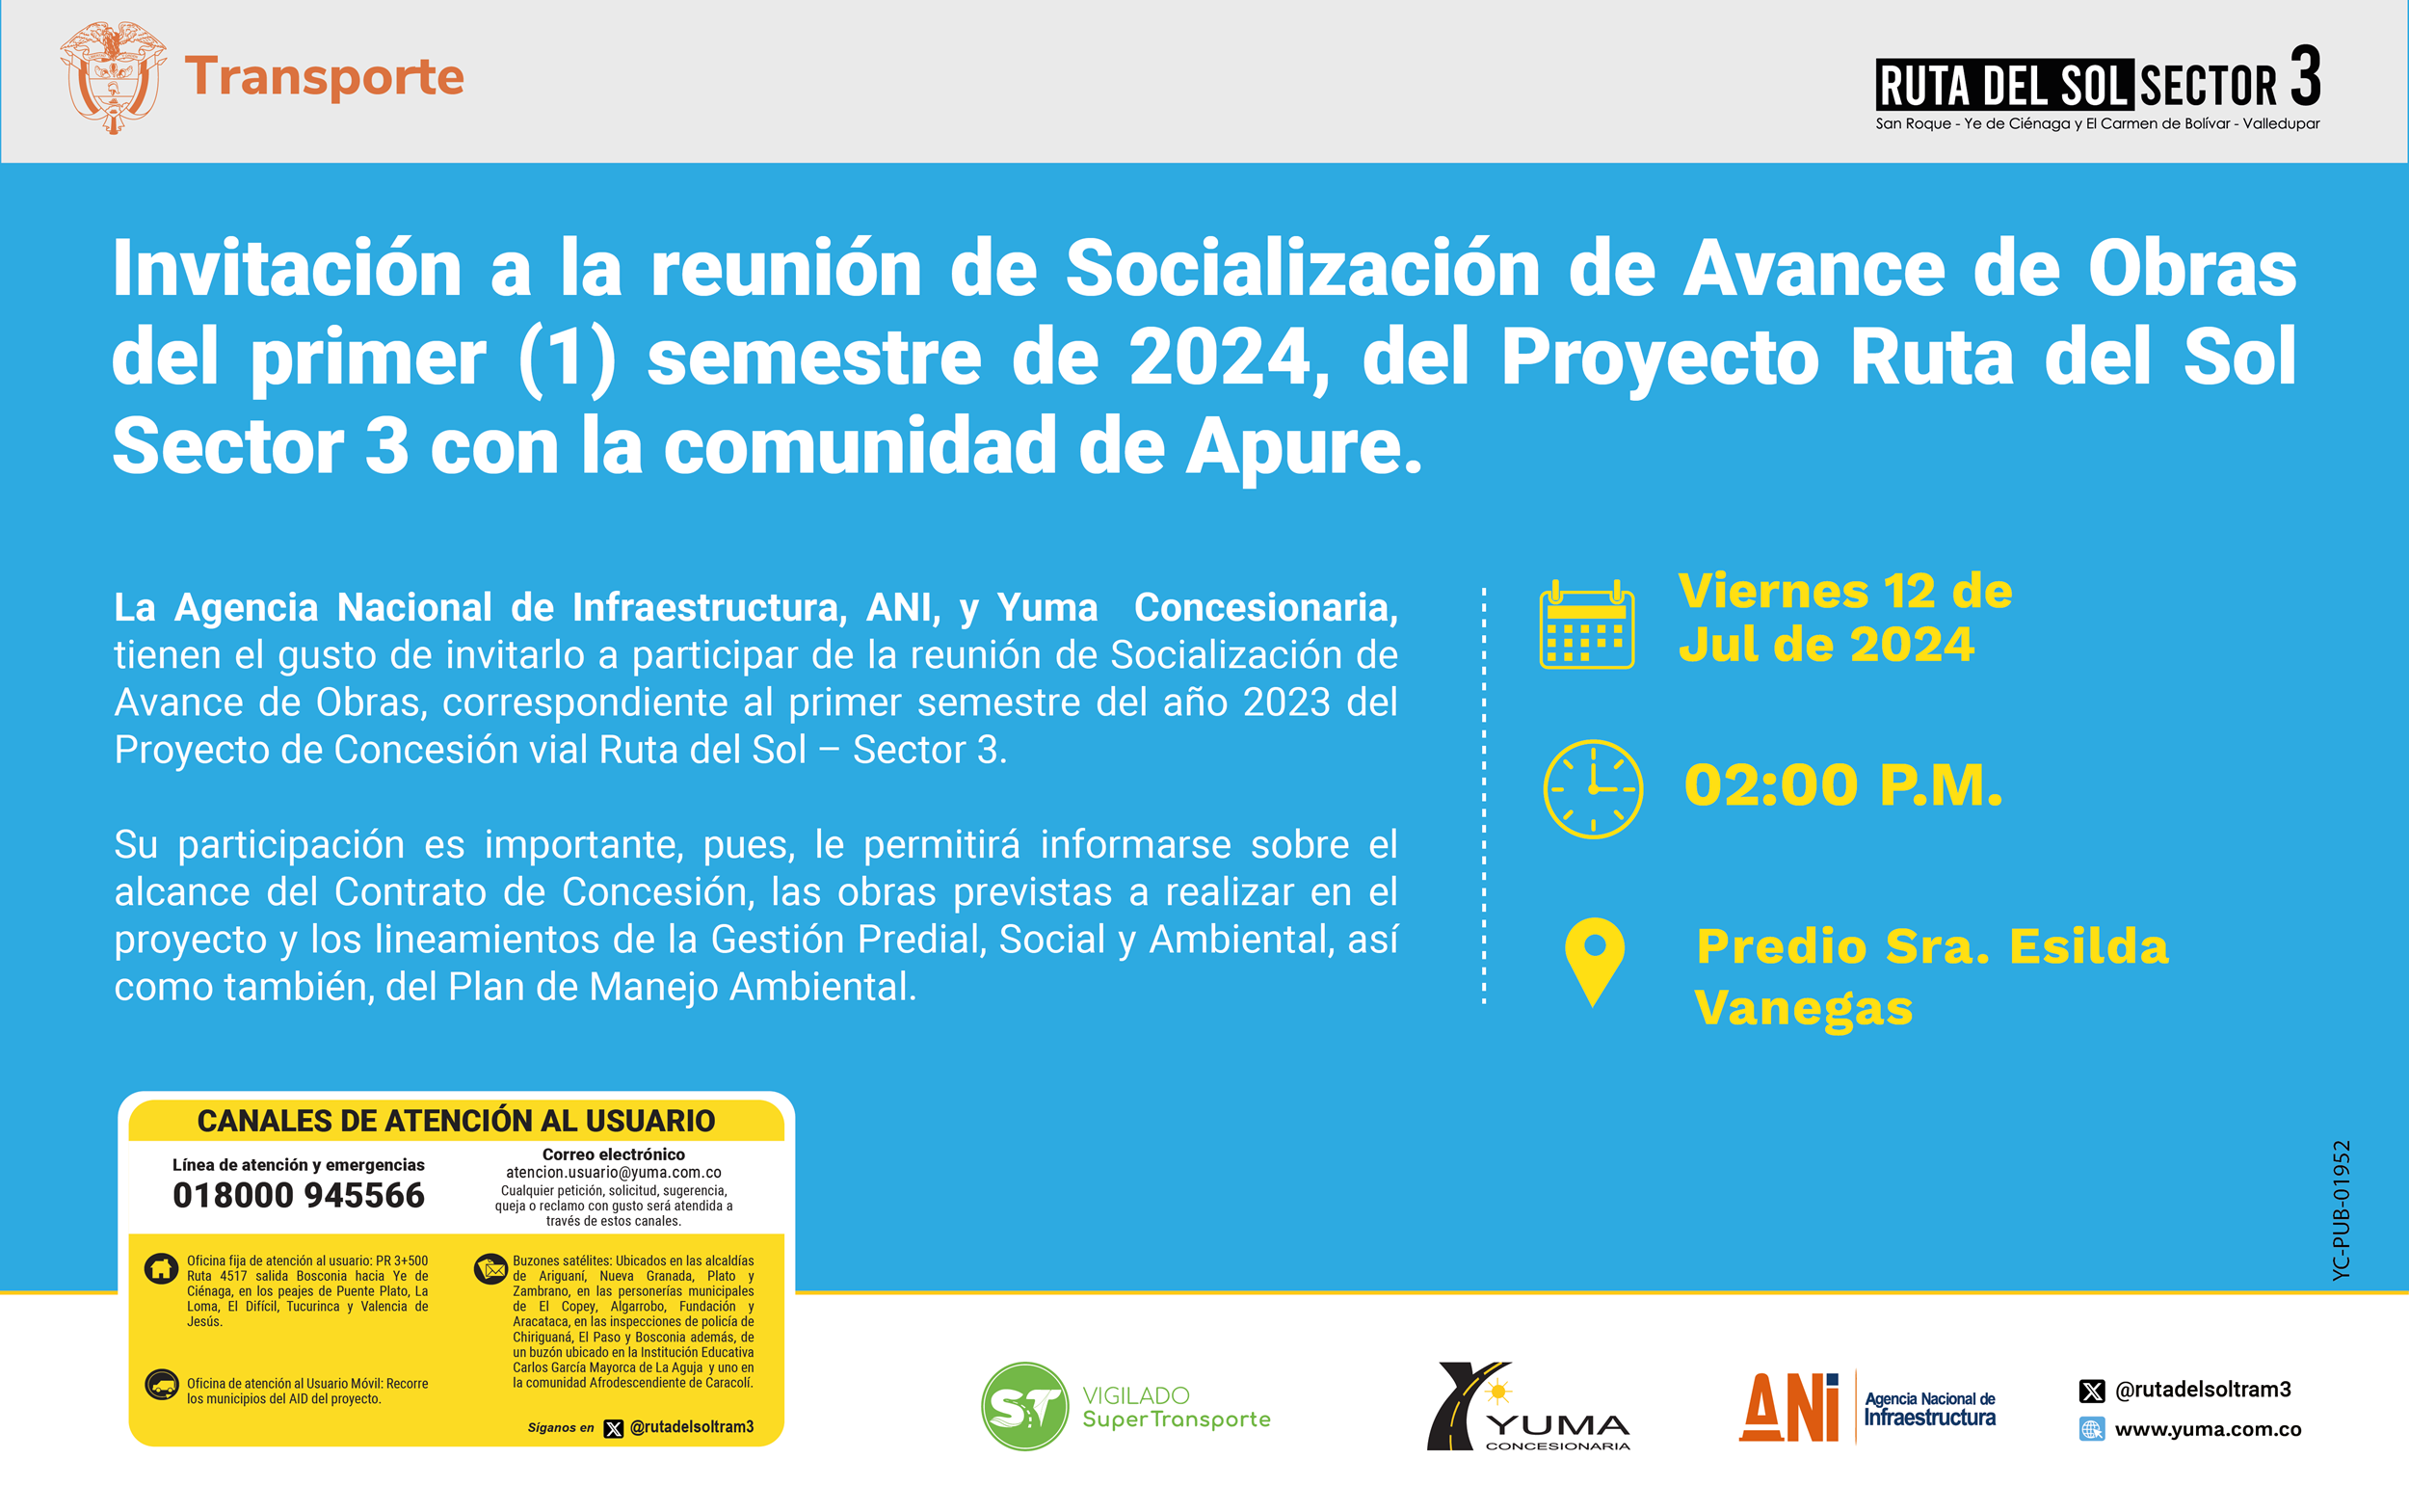 En este momento estás viendo Invitación a la reunión de Socialización de Avance de Obras del primer semestre de 2024 con la comunidad de Apure